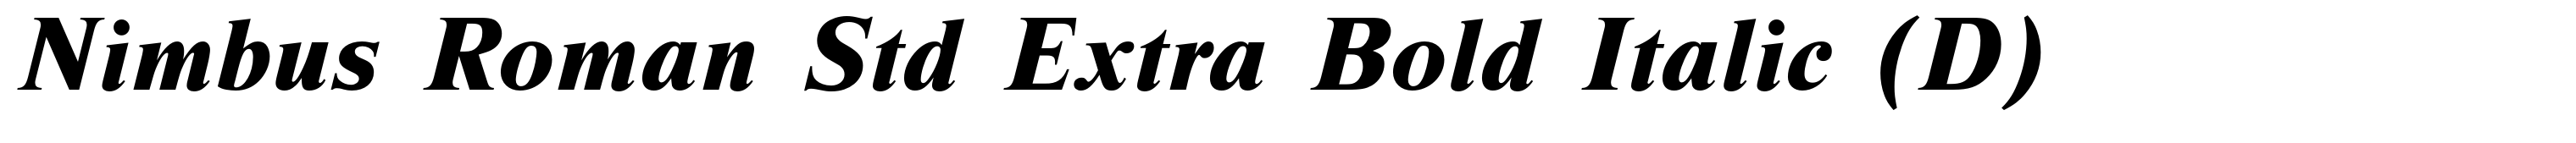 Nimbus Roman Std Extra Bold Italic (D)